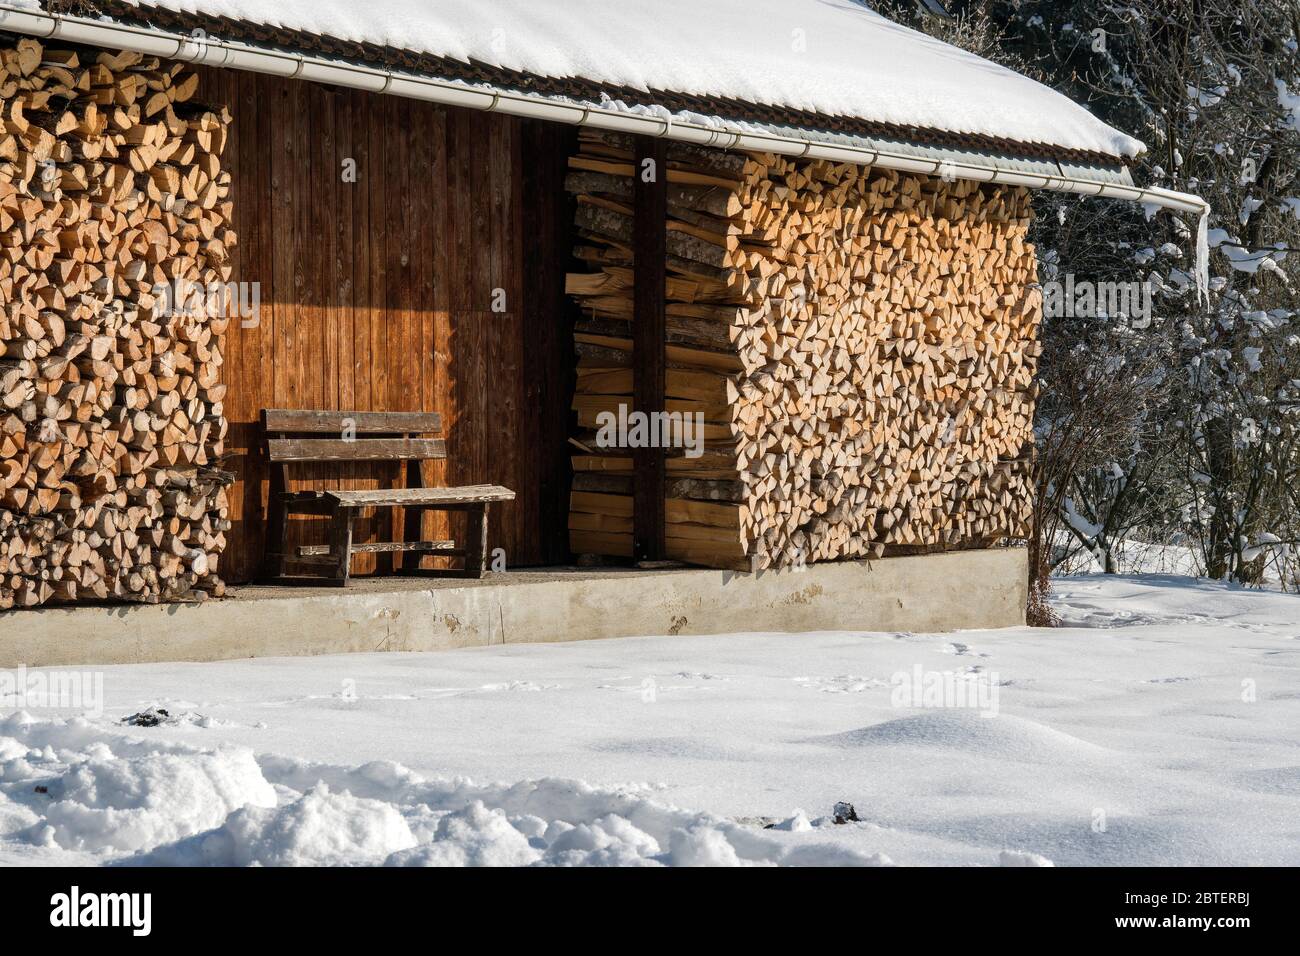 Stadel im Winter mit aufgeschichtetem Brennholz Foto de stock